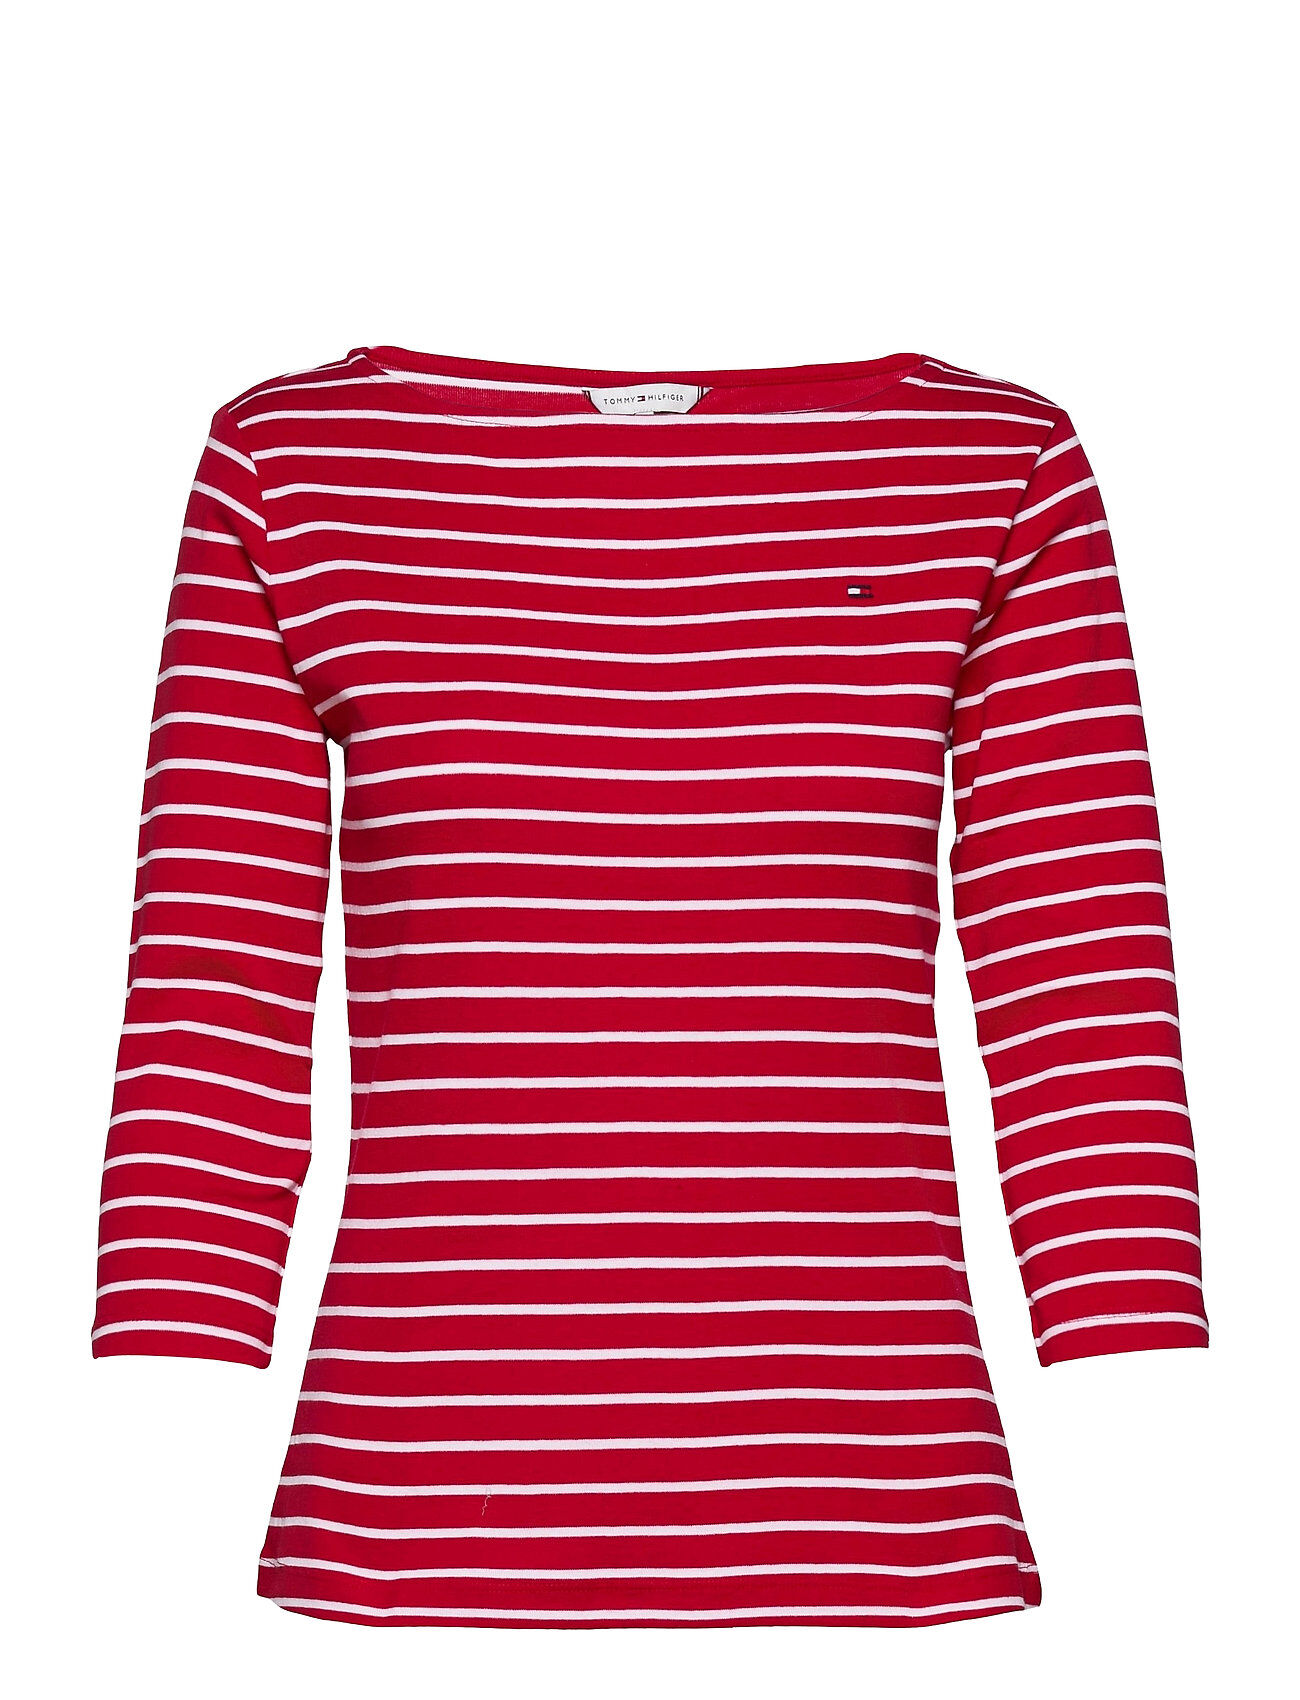 Tommy Hilfiger Sp Slim Stp Boat-Nk Top 3/4 Slv T-shirts & Tops Long-sleeved Rød Tommy Hilfiger